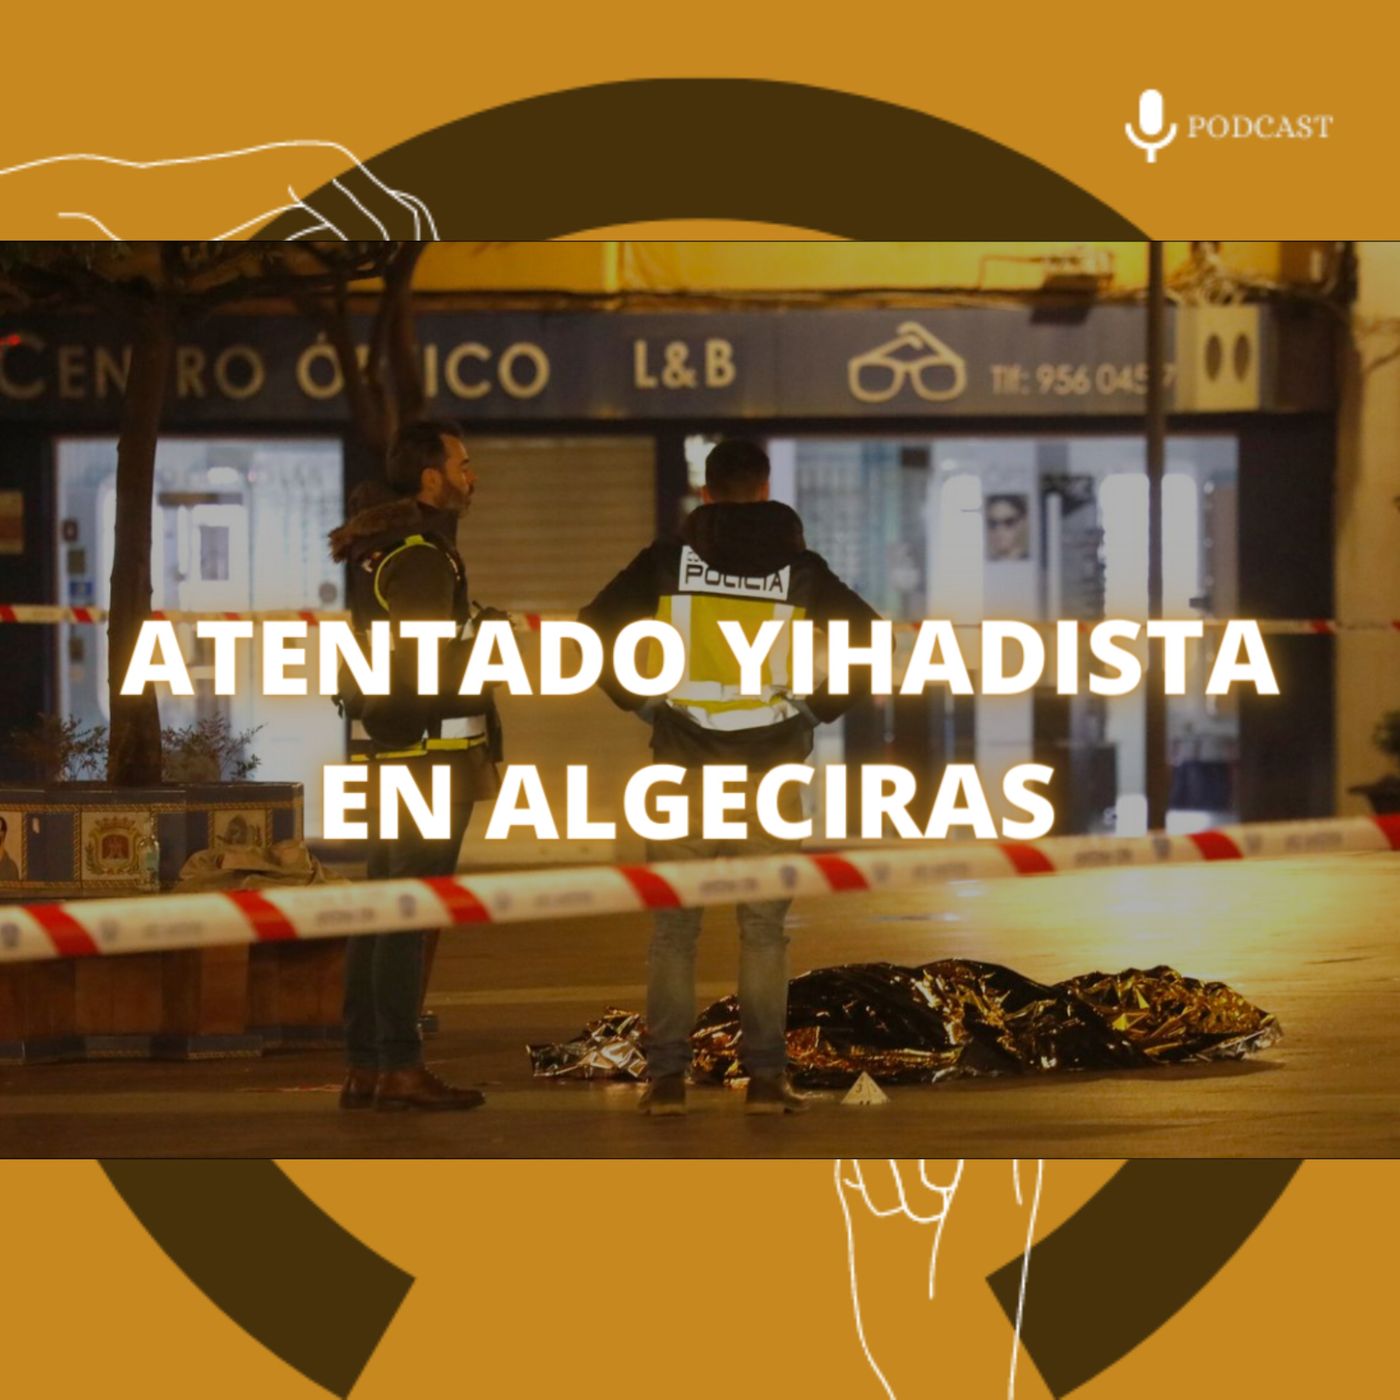 92. Caso aislado (IV) – Atentado yihadista en Algeciras